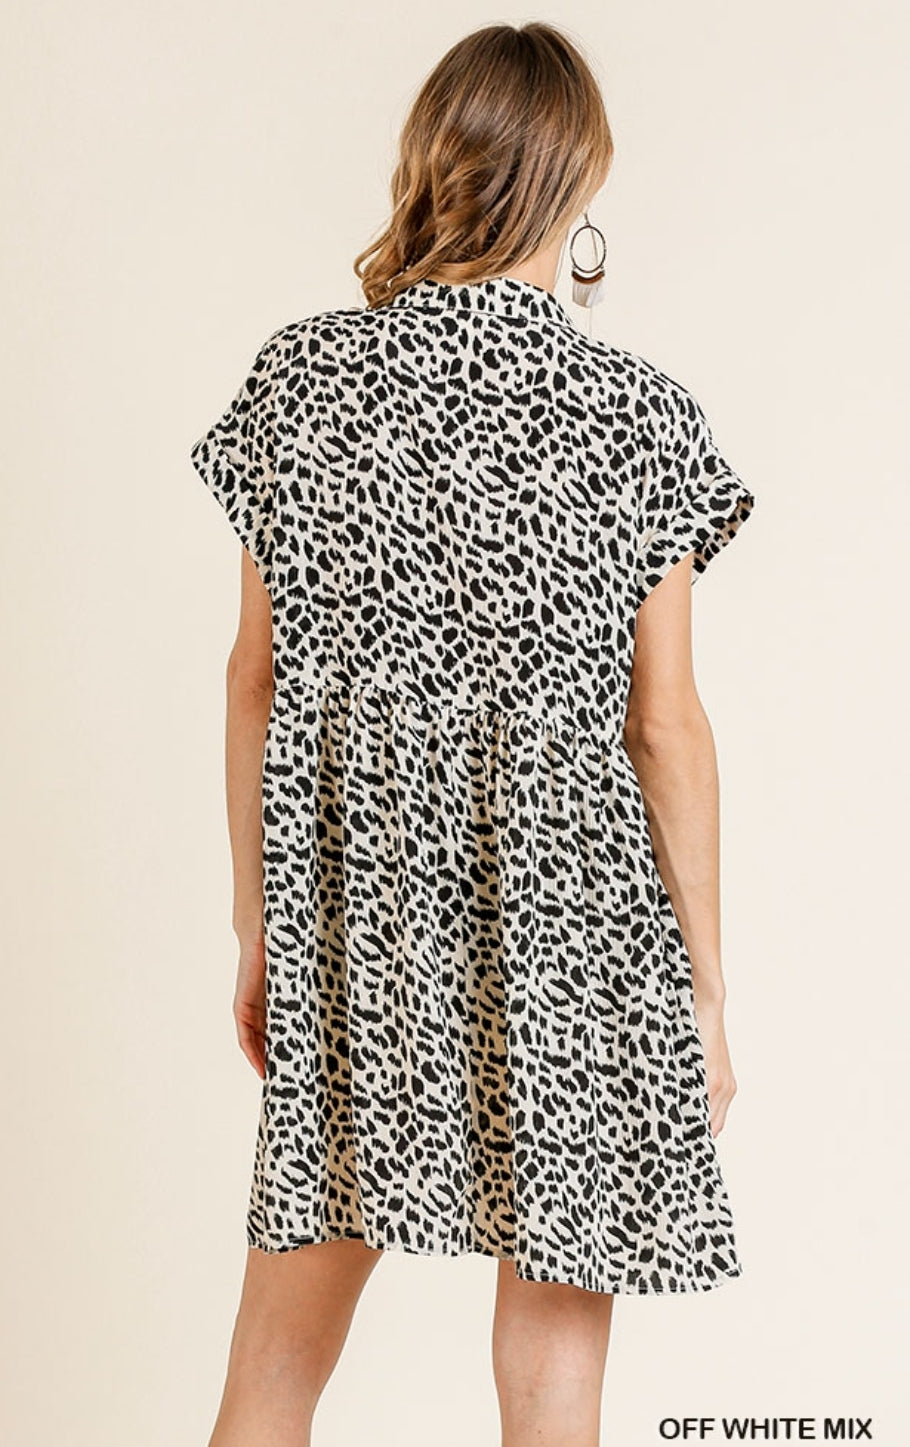 Short Leopard Dress!